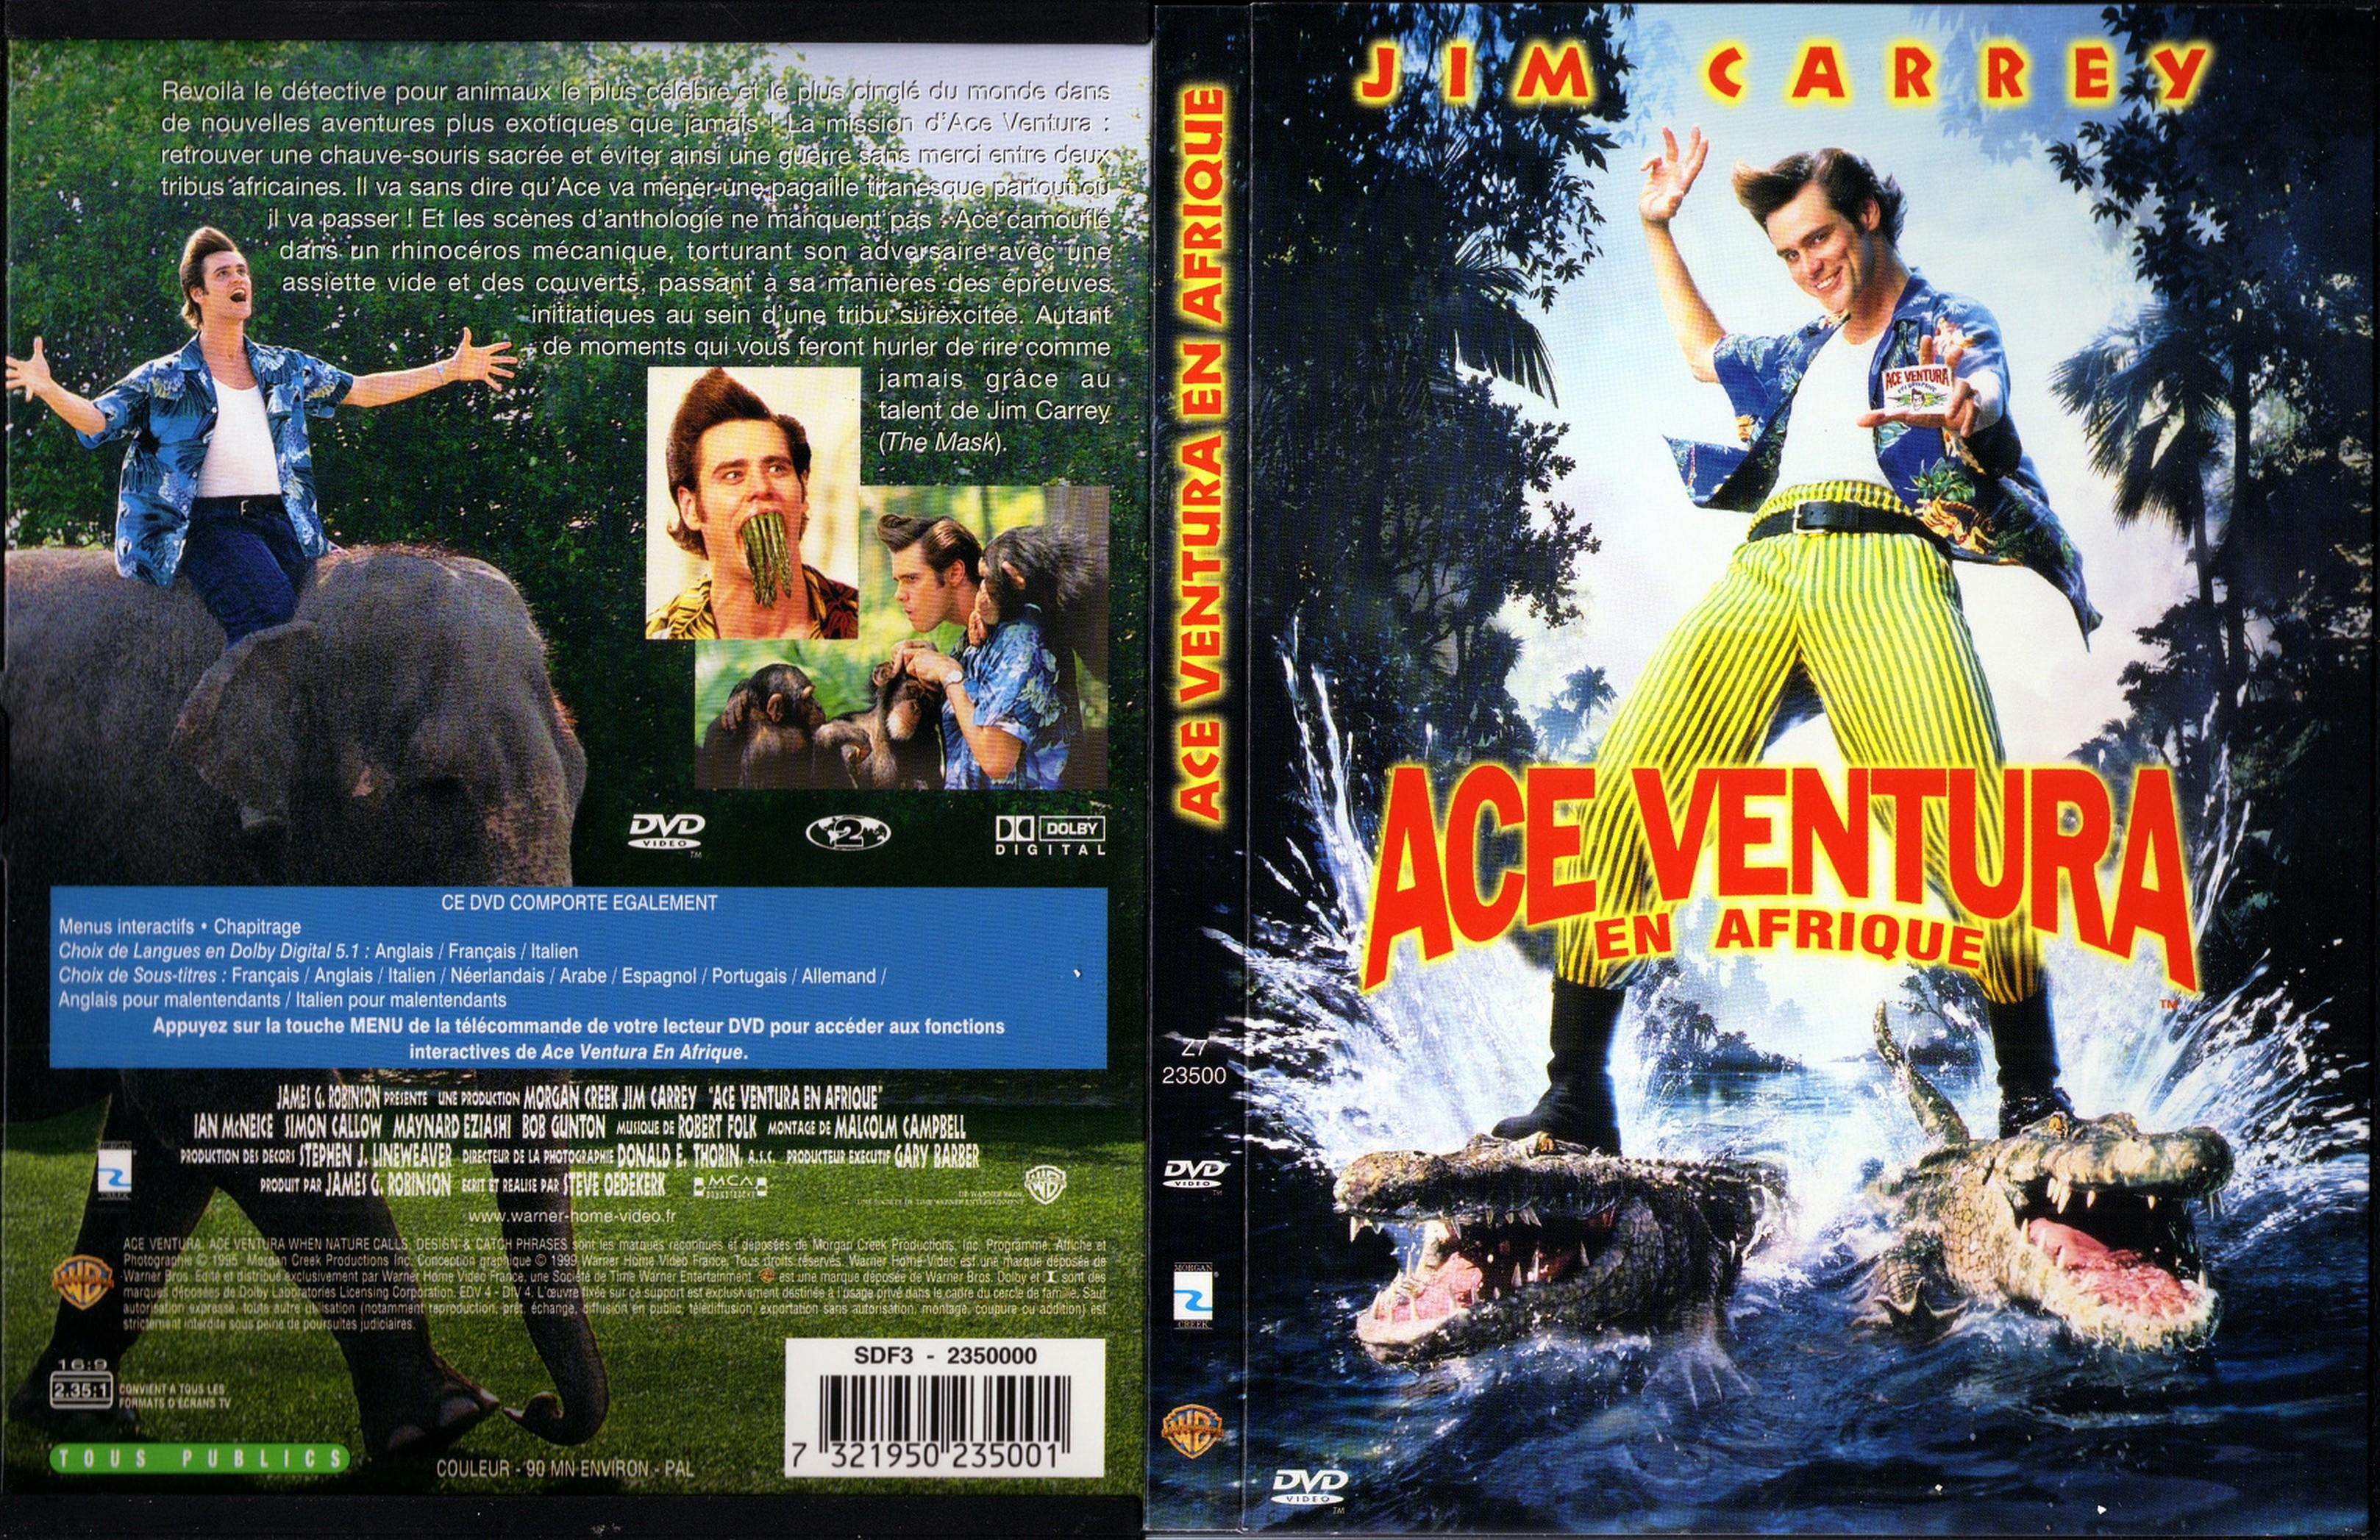 Jaquette DVD Ace Ventura en afrique